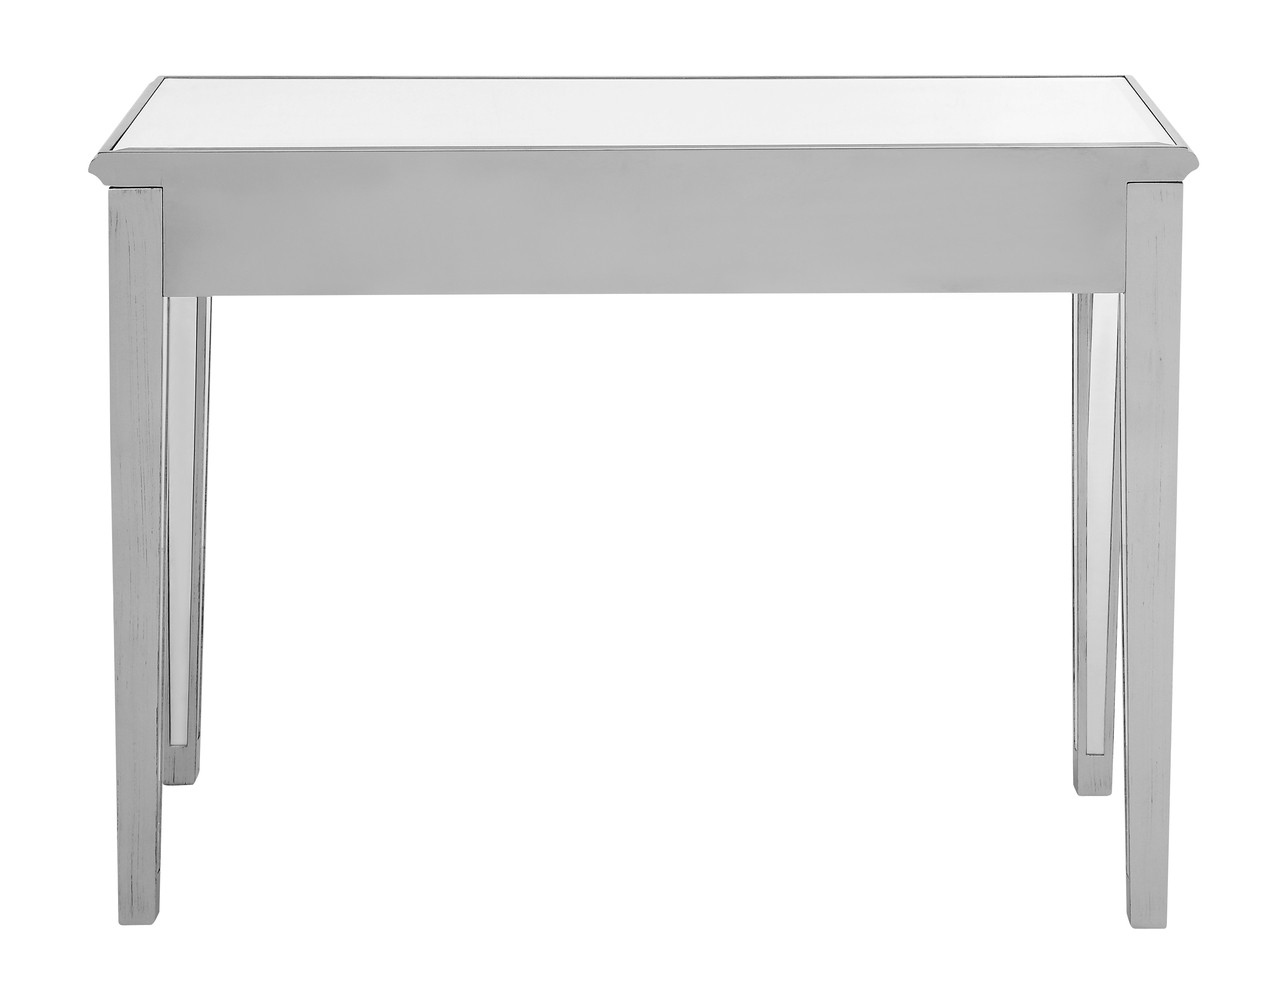 ELEGANT DECOR MF6-1006S Vanity Table 42 in. x 18 in. x 31 in. in Silver paint